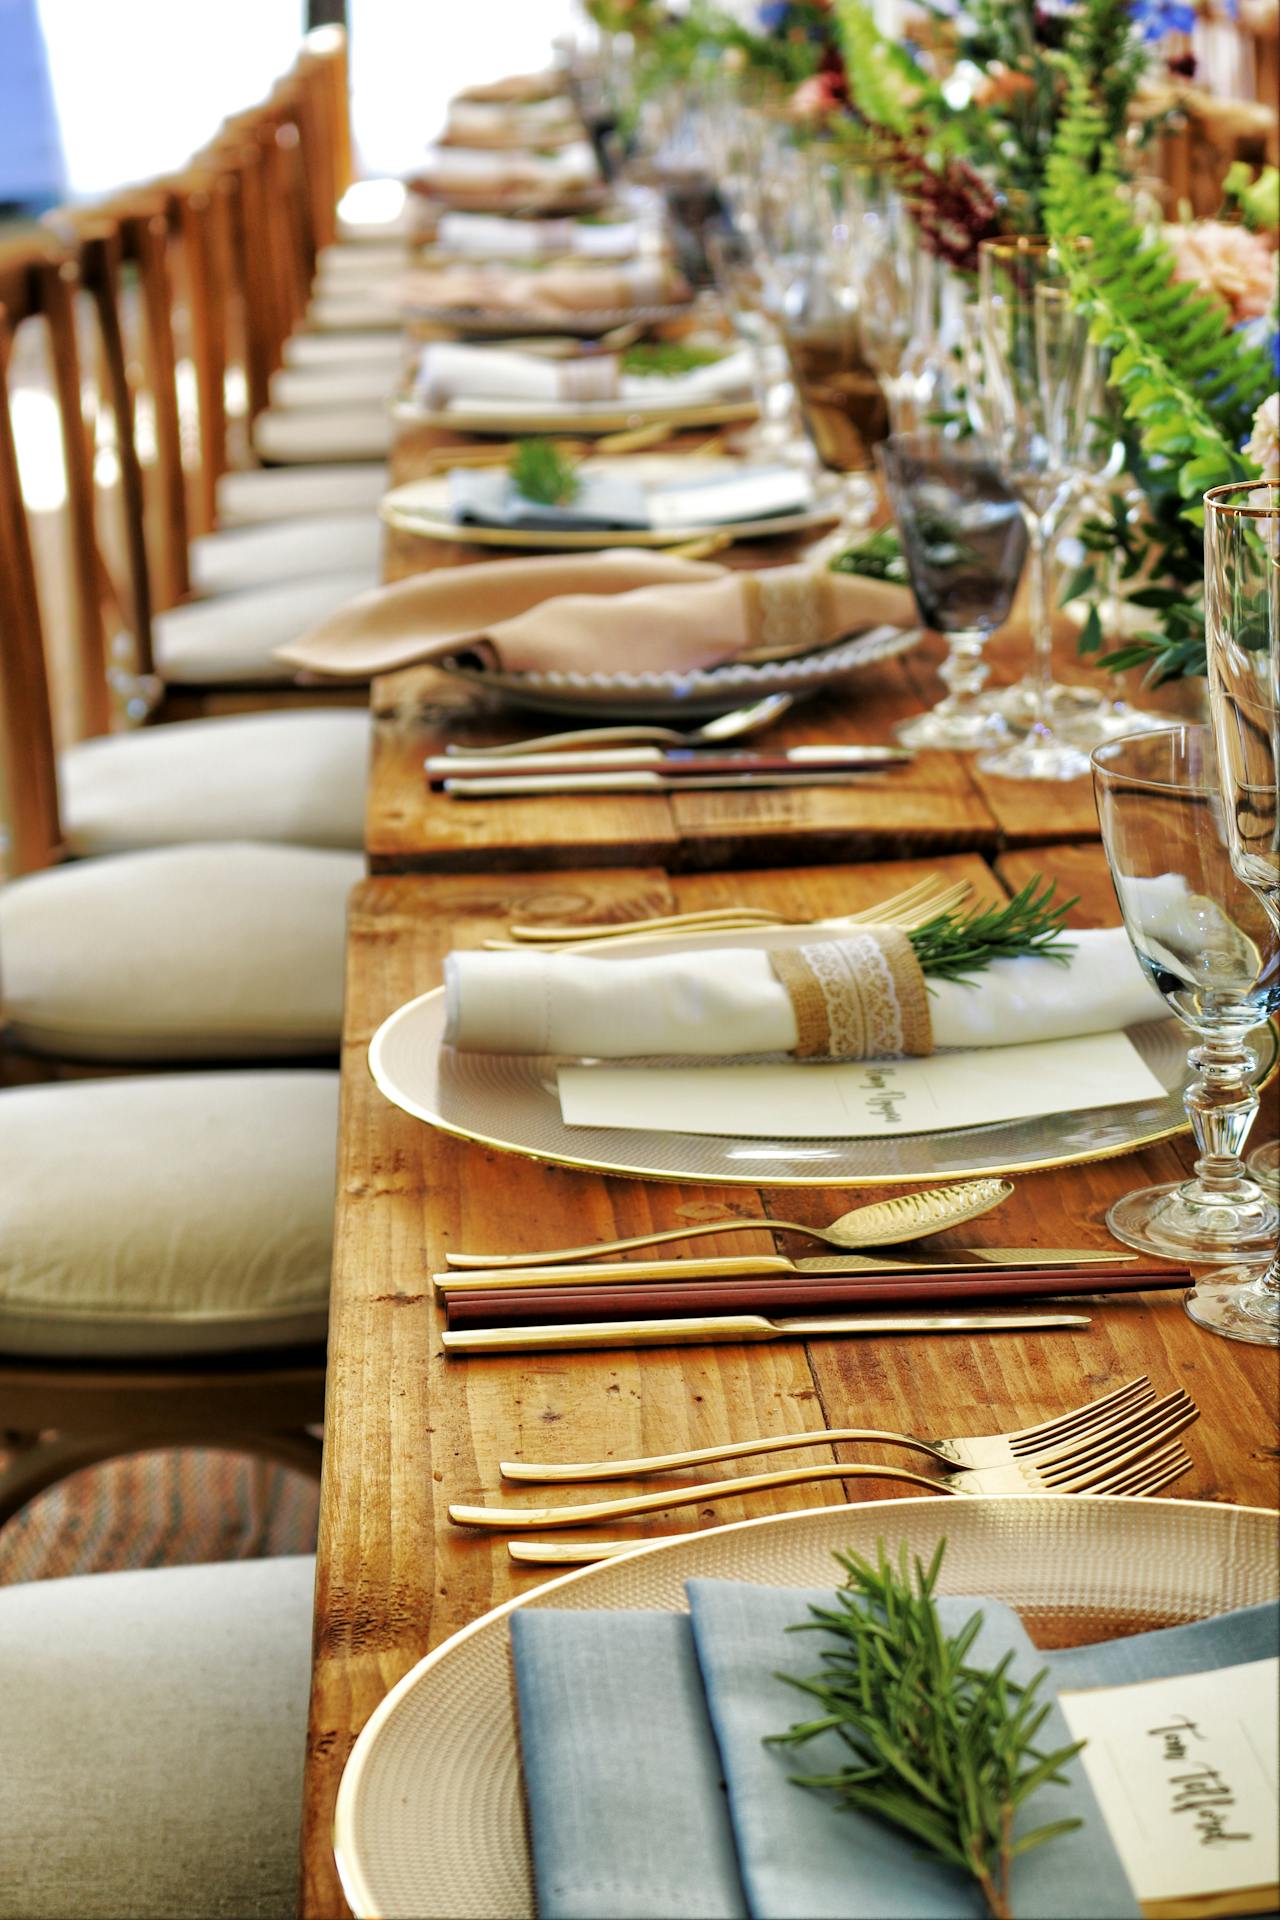 Ein gedeckter Tisch für ein besonderes Abendessen | Quelle: Pexels